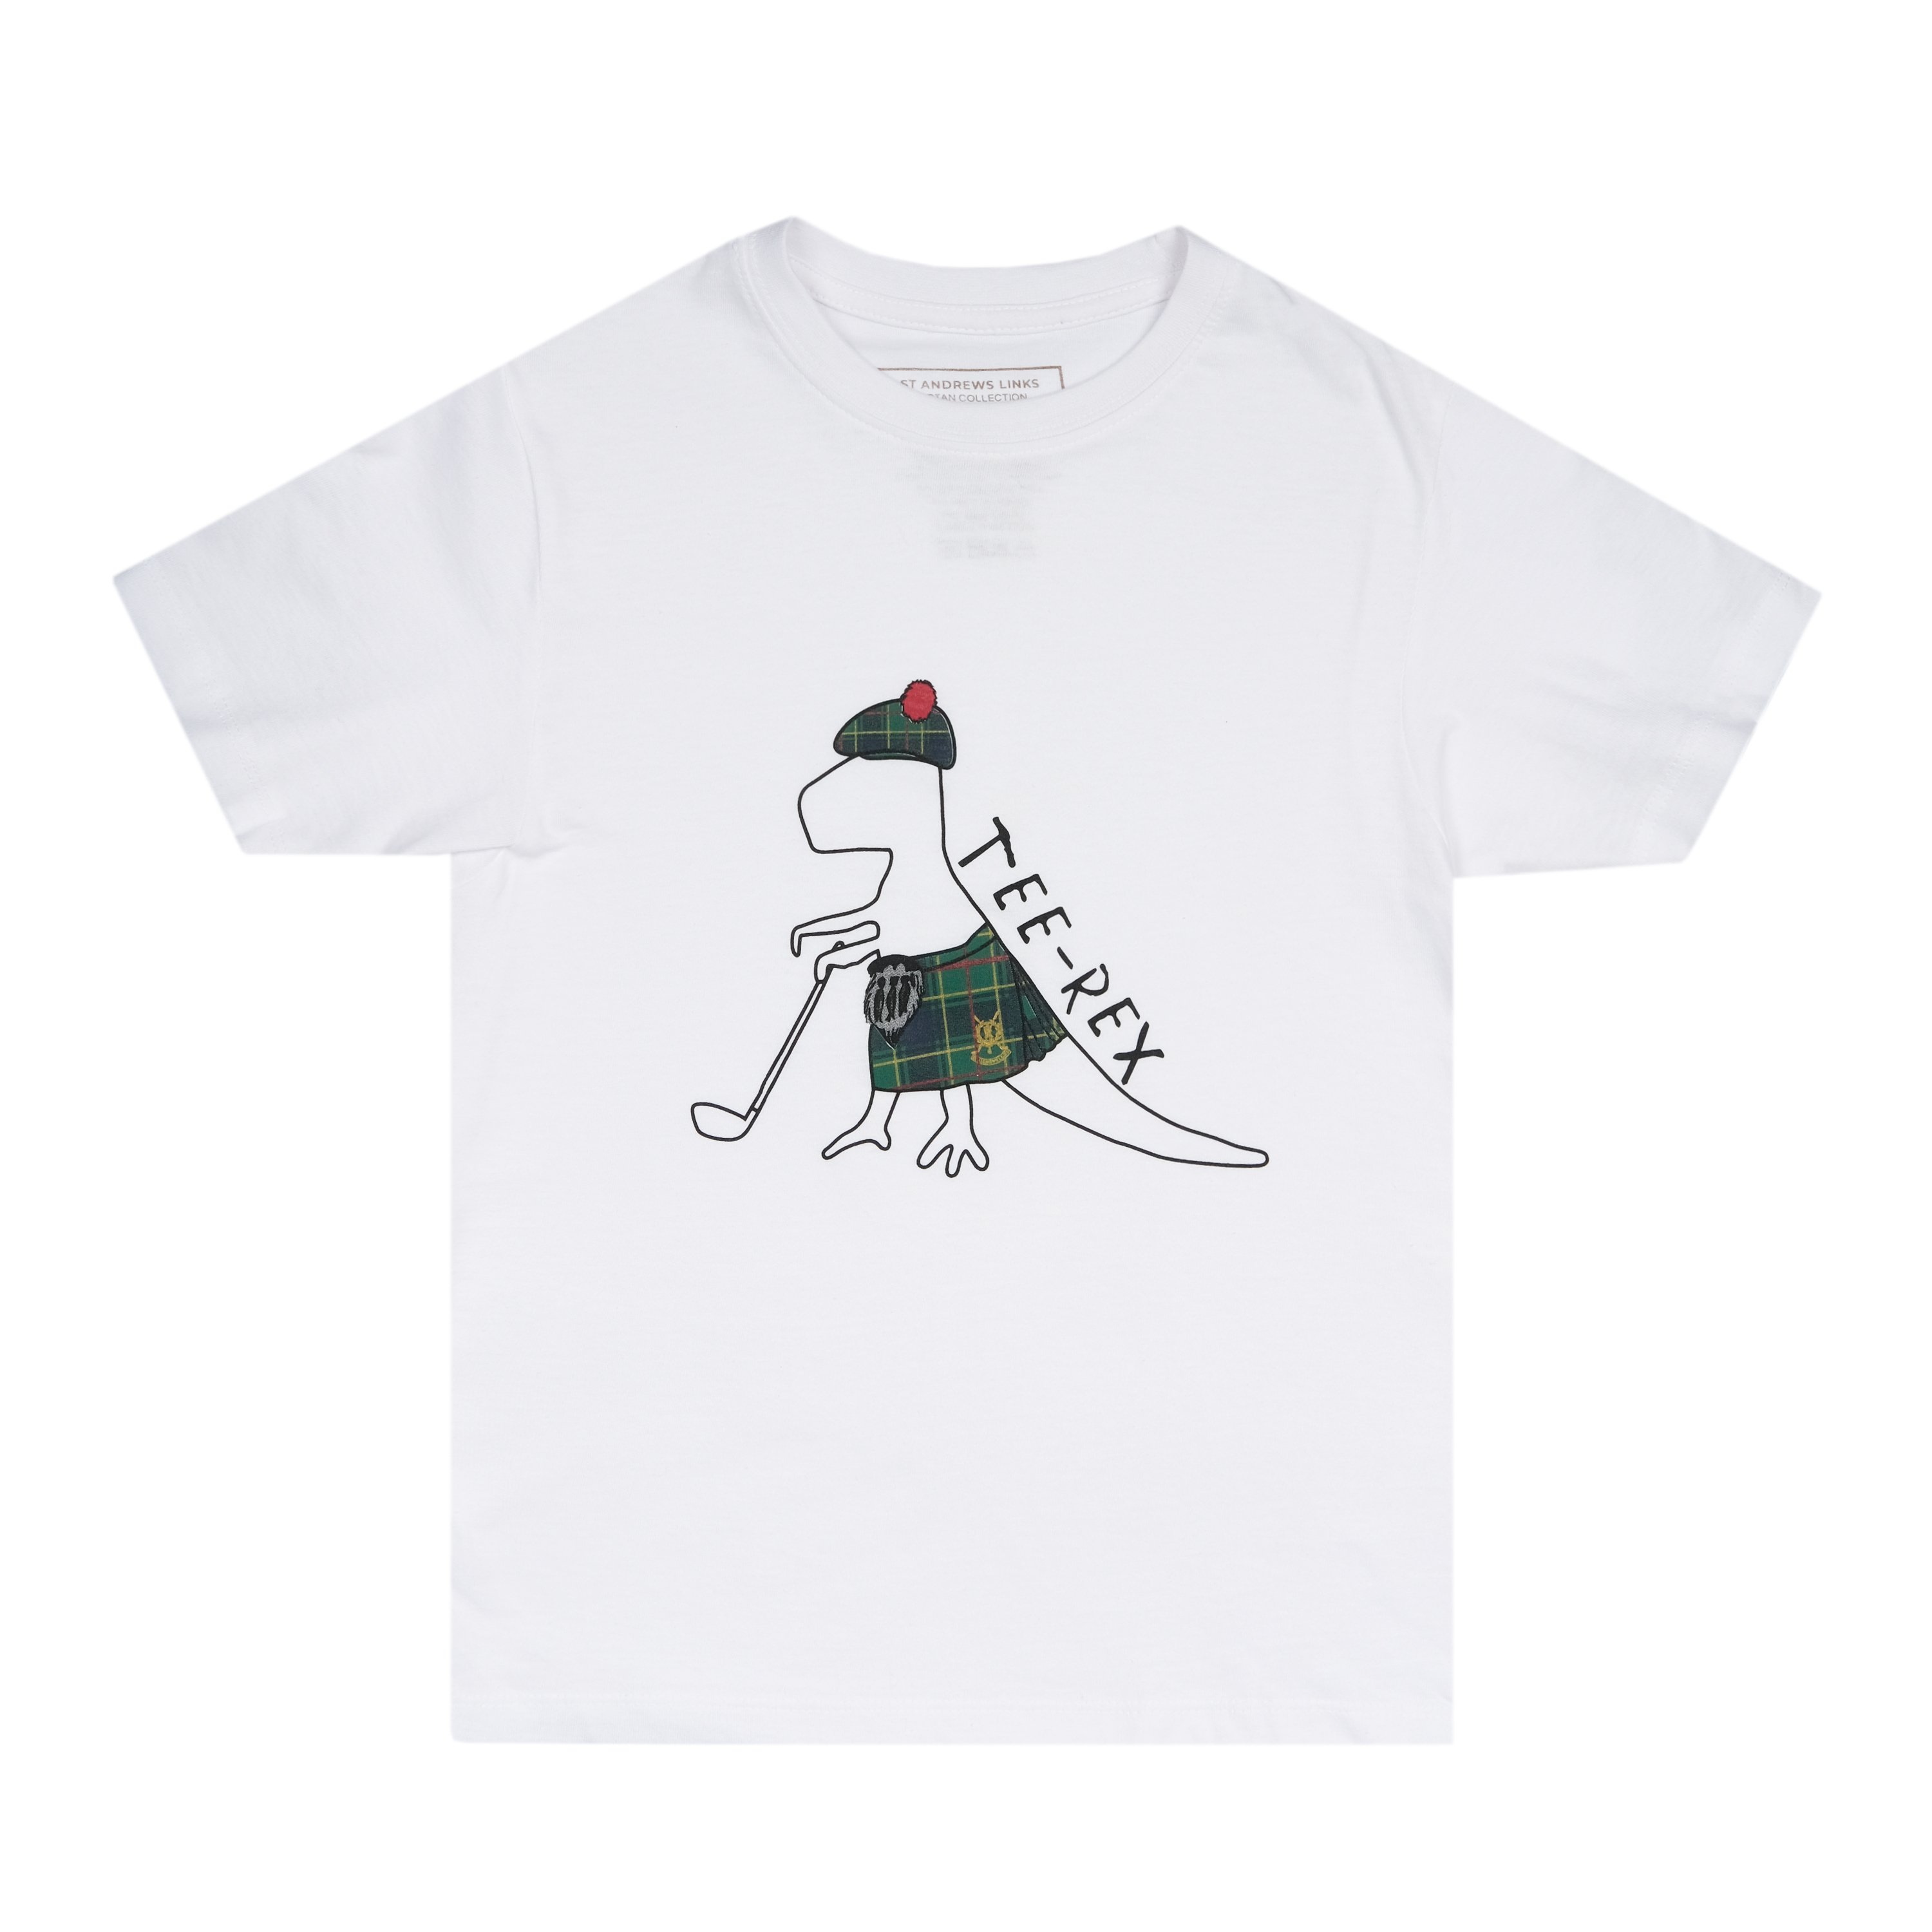 St Andrews Links Tartan Tee-rex T-shirt